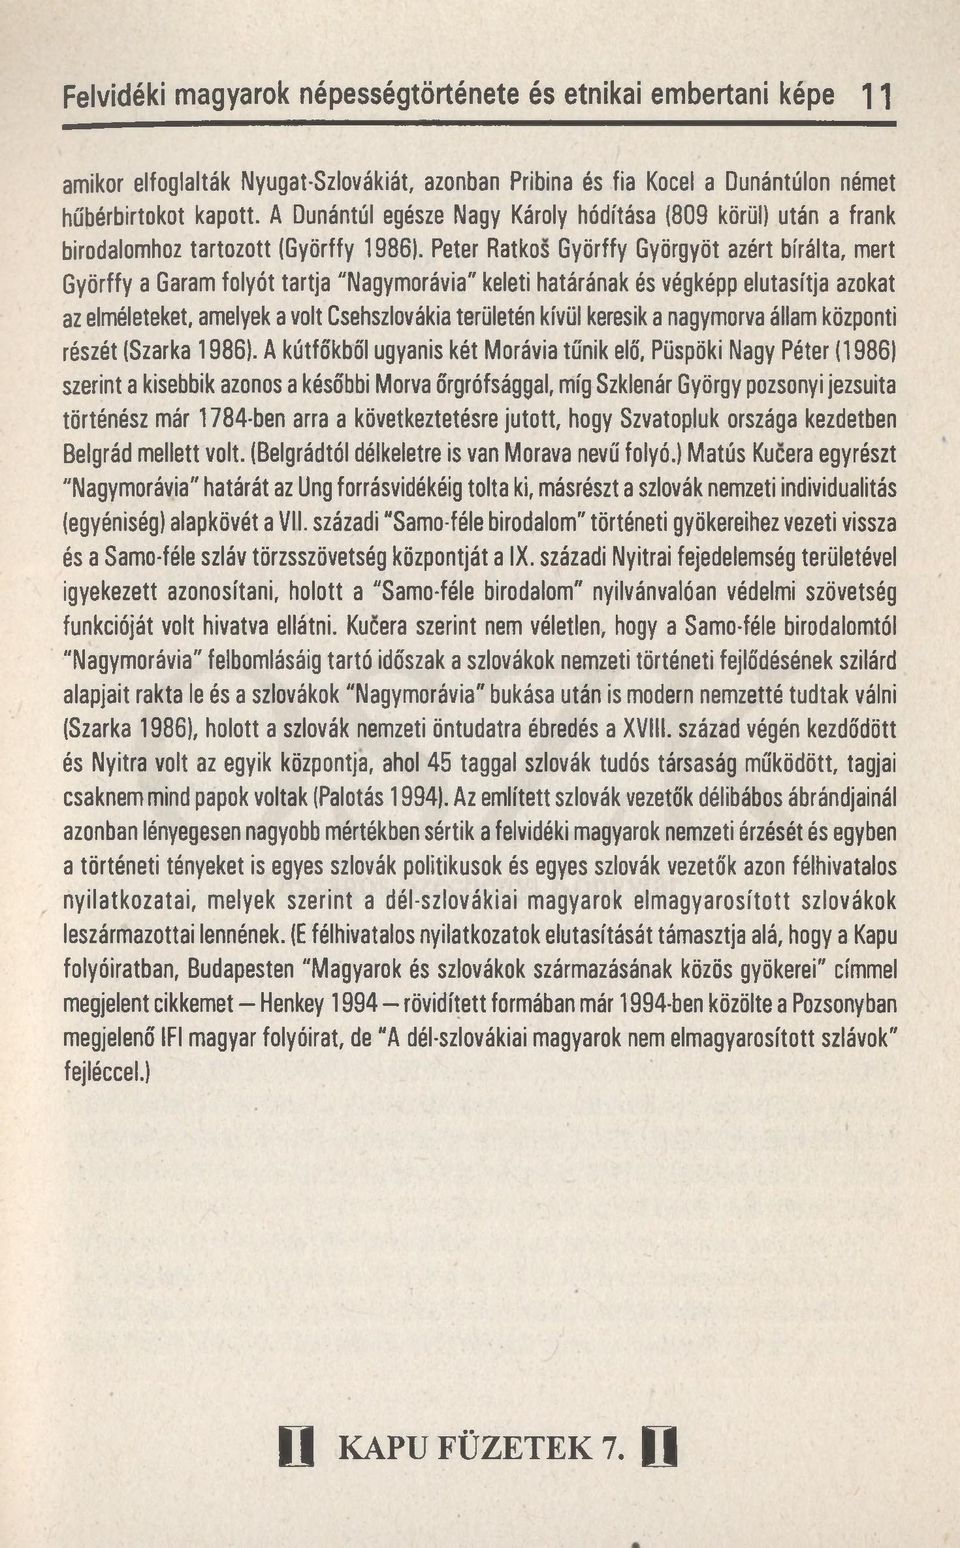 Peter Ratkos Györffy Györgyöt azért bírálta, mert Györffy a Garam folyót tartja "Nagymorávia" keleti határának és végképp elutasítja azokat az elméleteket, amelyek a volt Csehszlovákia területén